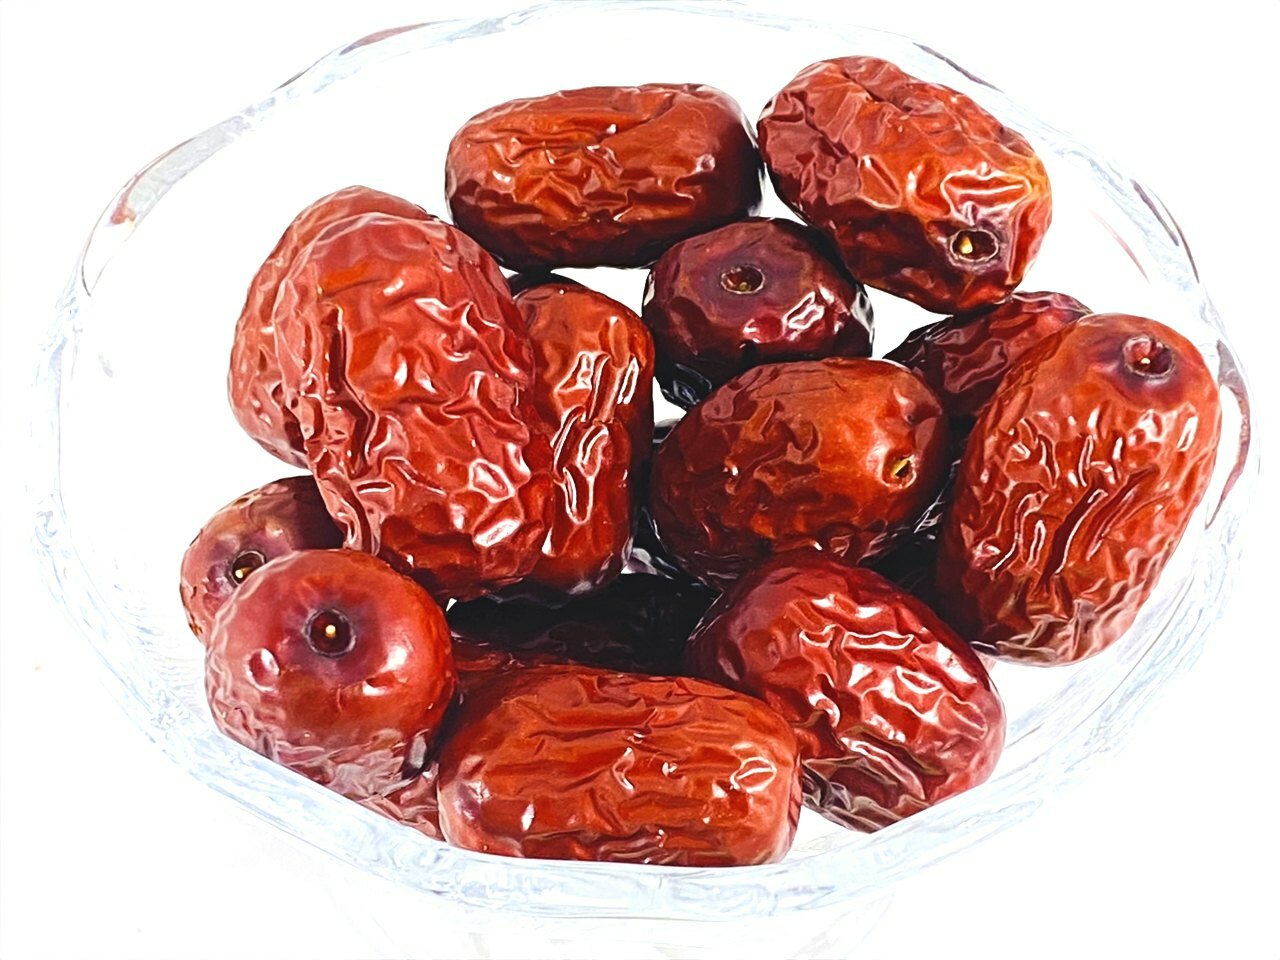 中華料理に使われる干しナツメで知られたフルーツ『ナツメ』。